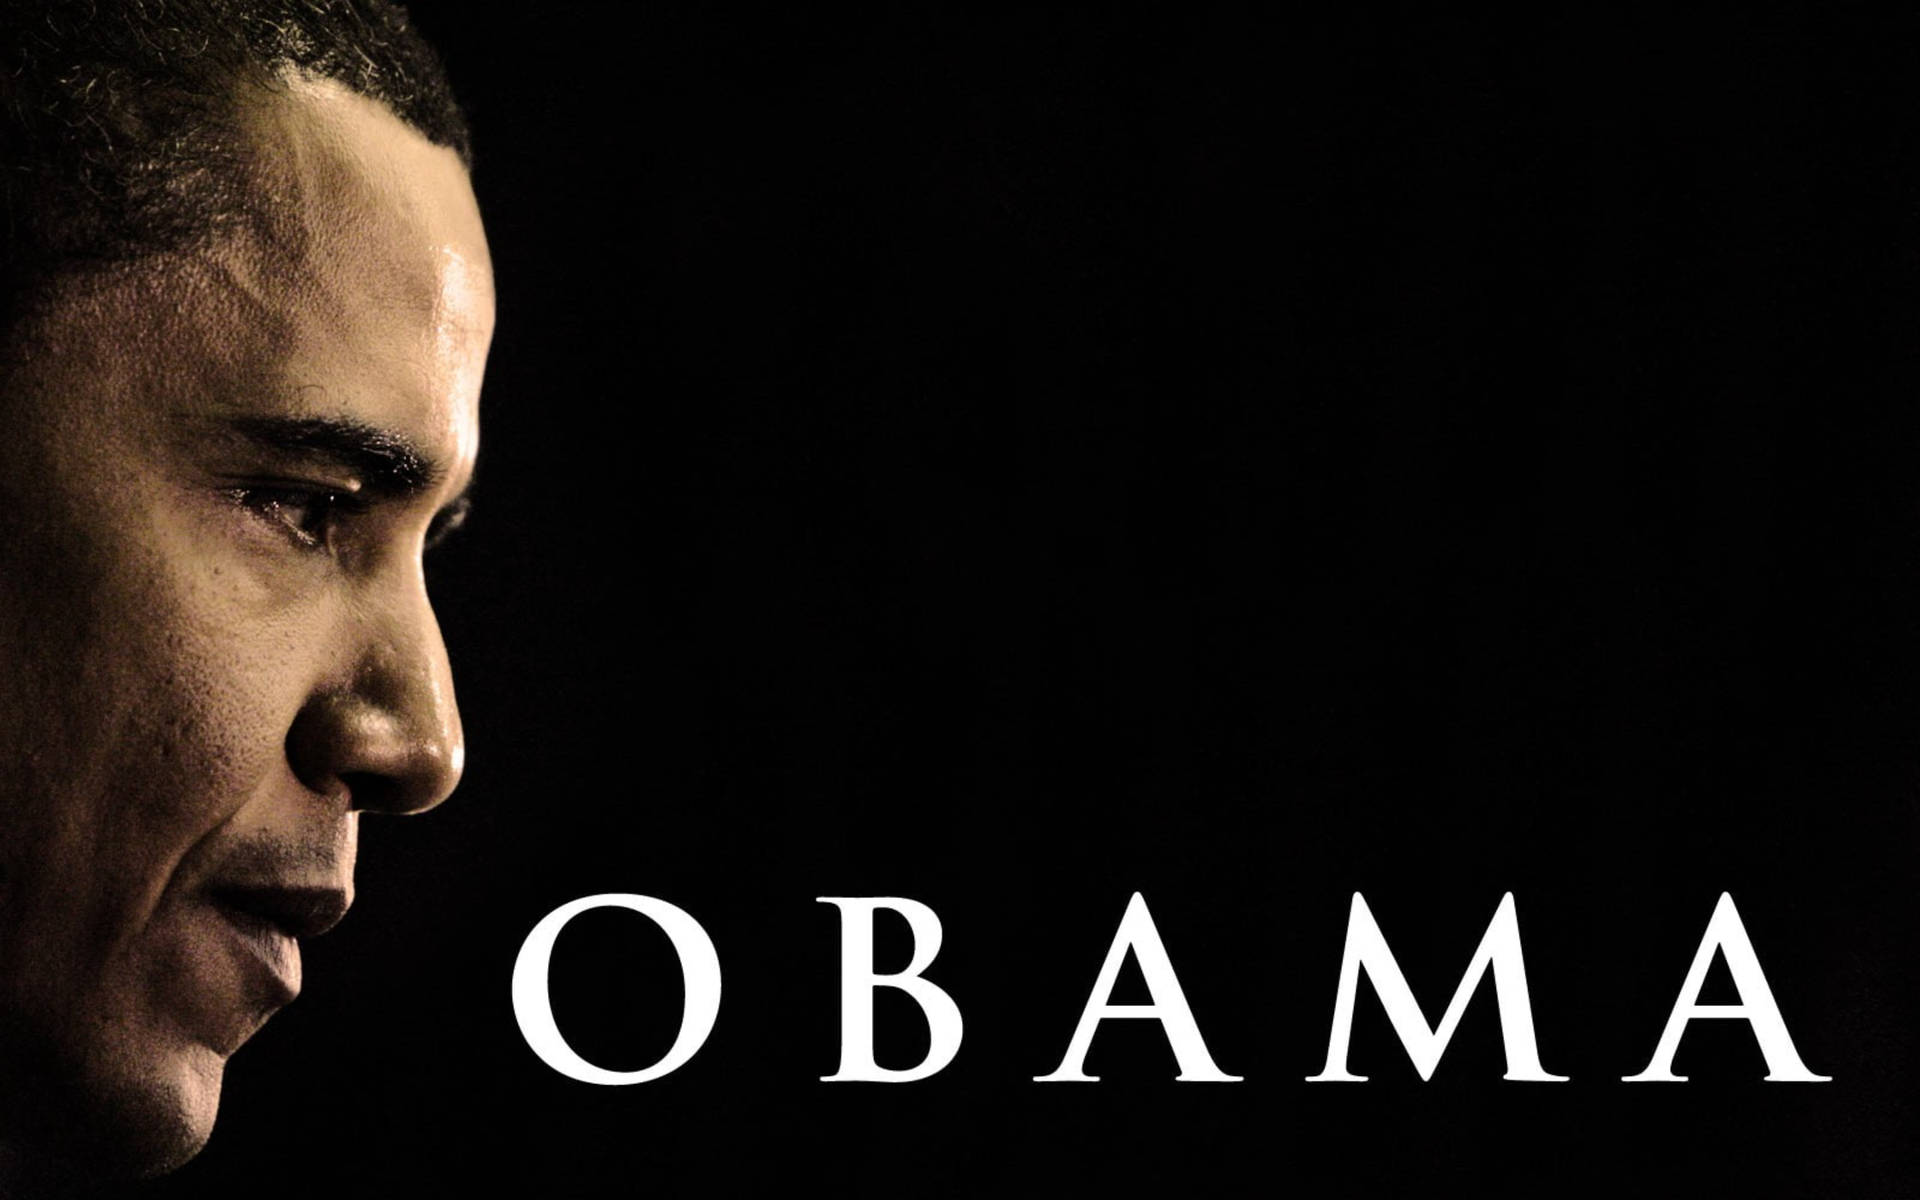 Former President Barack Obama Poster Background